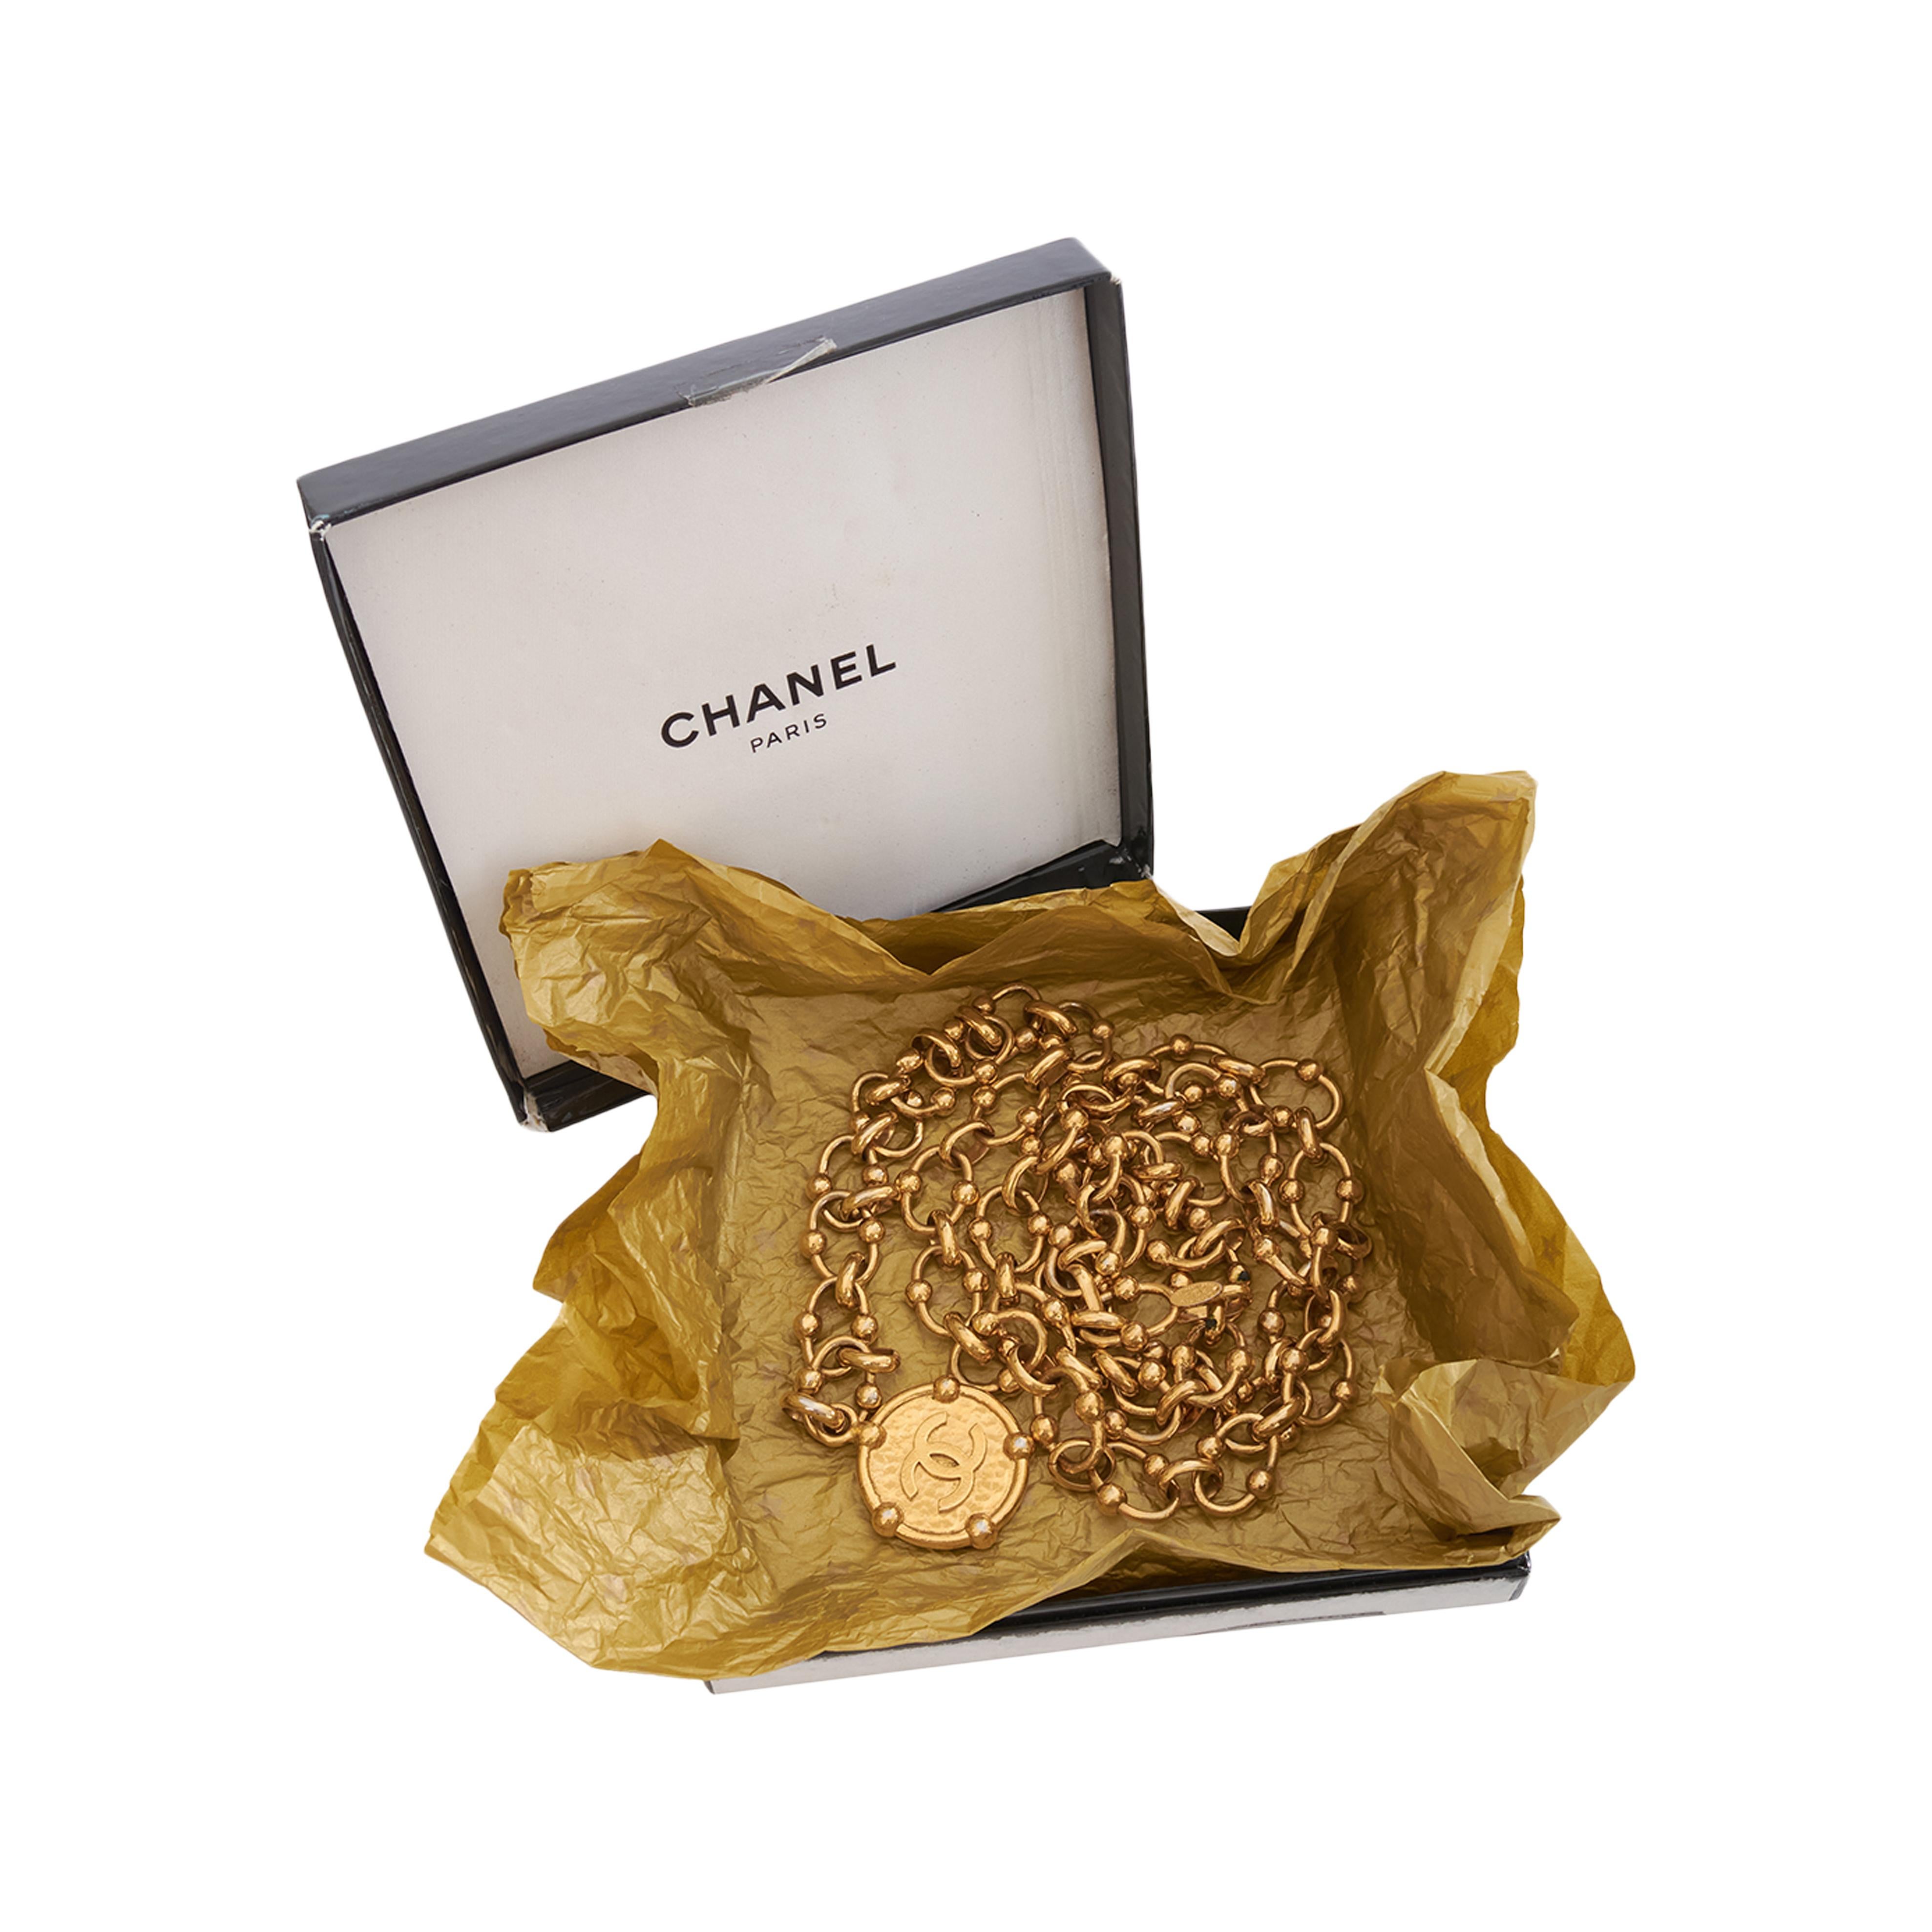 Der goldene Metallkettengürtel von Chanel ist ein Muss für alle, die einen eleganten und raffinierten Stil suchen. Dieser Gürtel ist aus hochwertigem, goldenem Metall gefertigt, das ihm ein luxuriöses und raffiniertes Aussehen verleiht. Der Gürtel